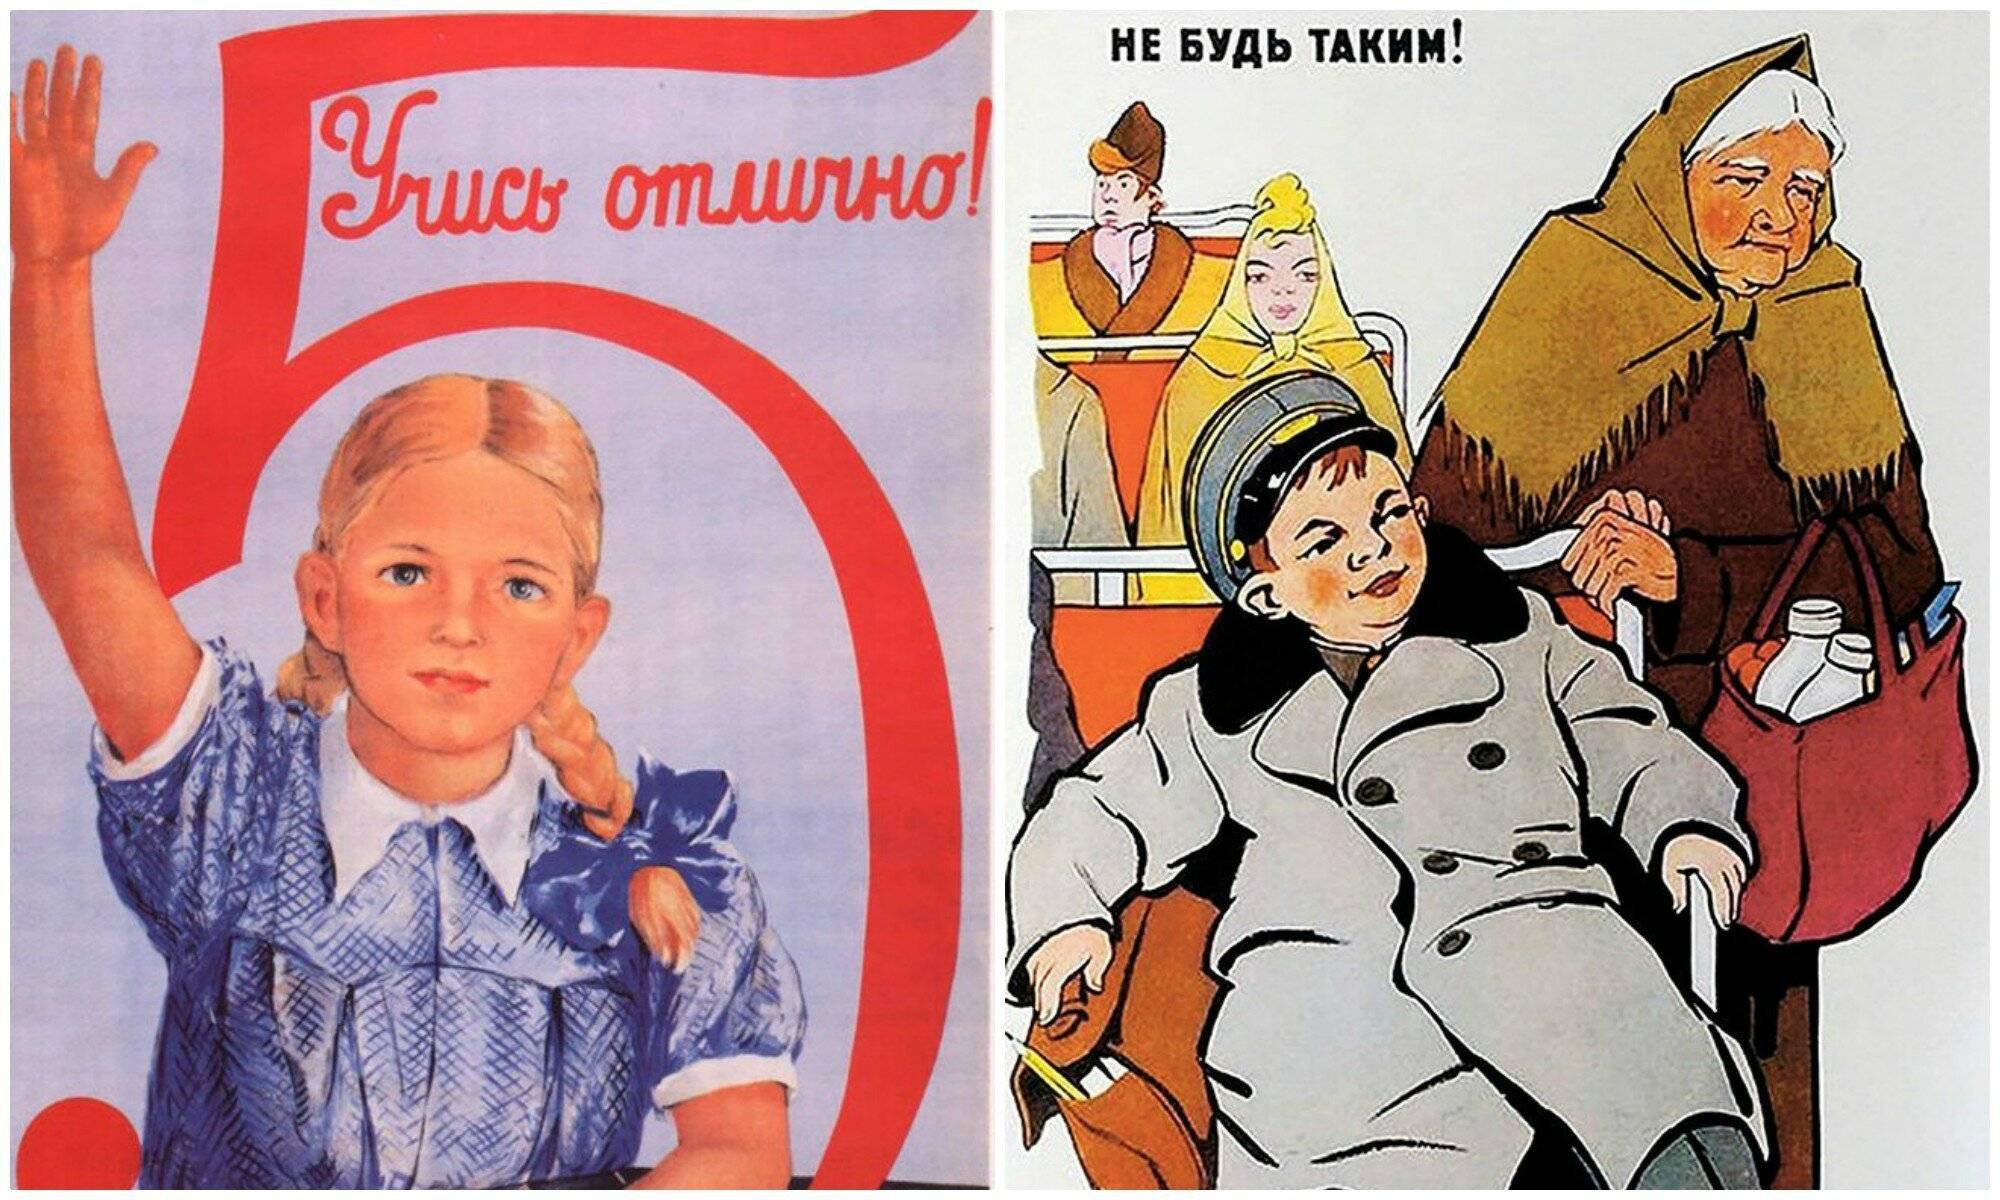 Машина времени: как воспитывали детей в советском союзе и как сейчас - статьи